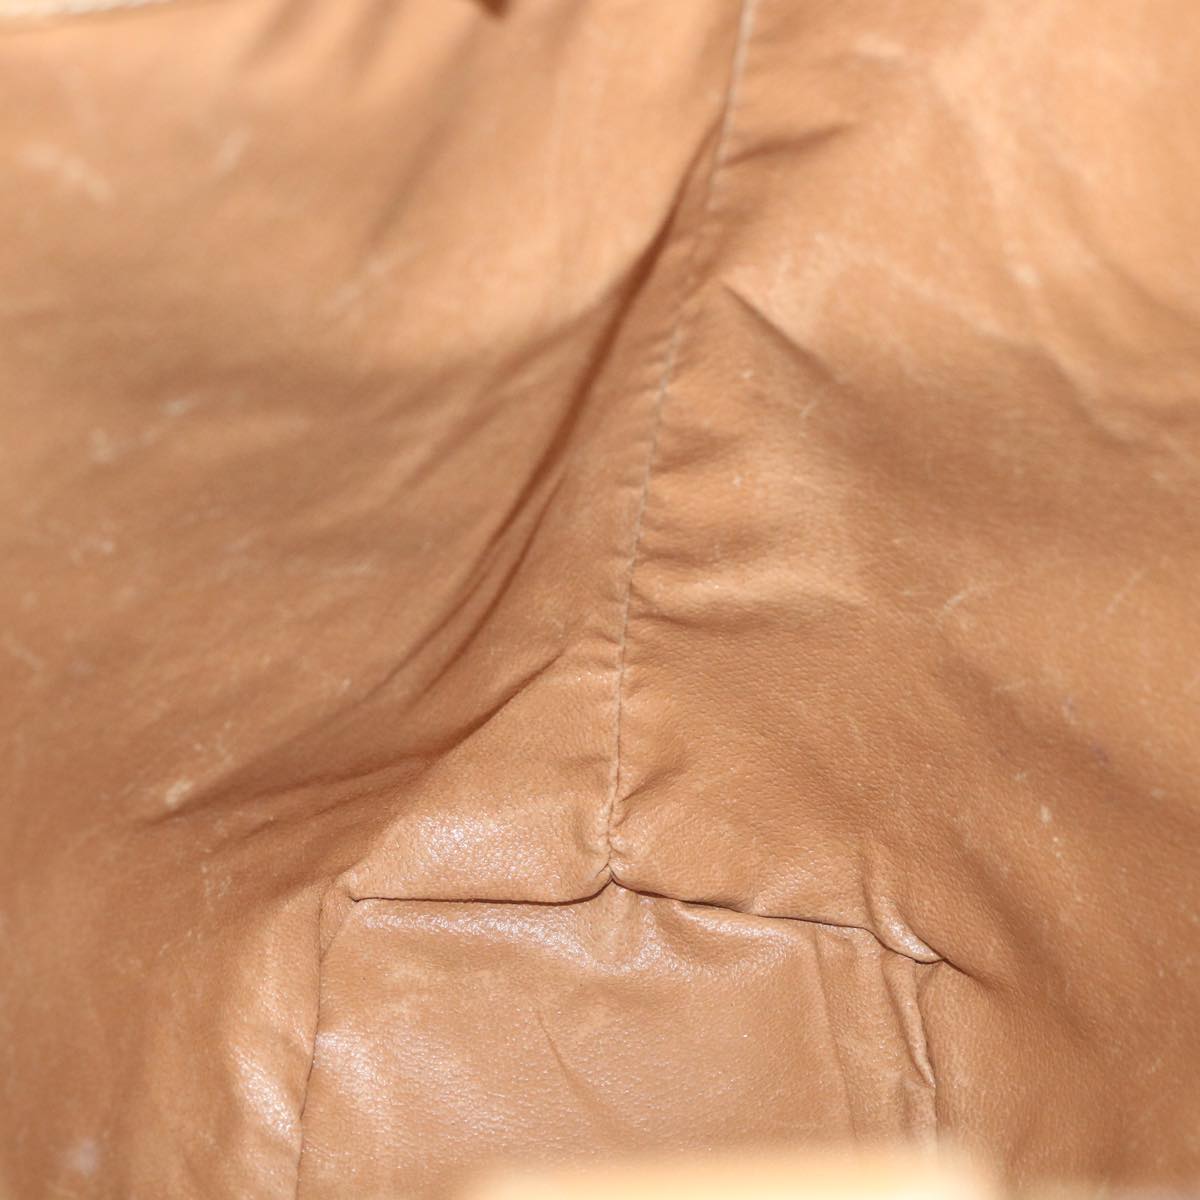 CELINE Macadam Canvas Shoulder Bag PVC Leather Brown Auth ar10788